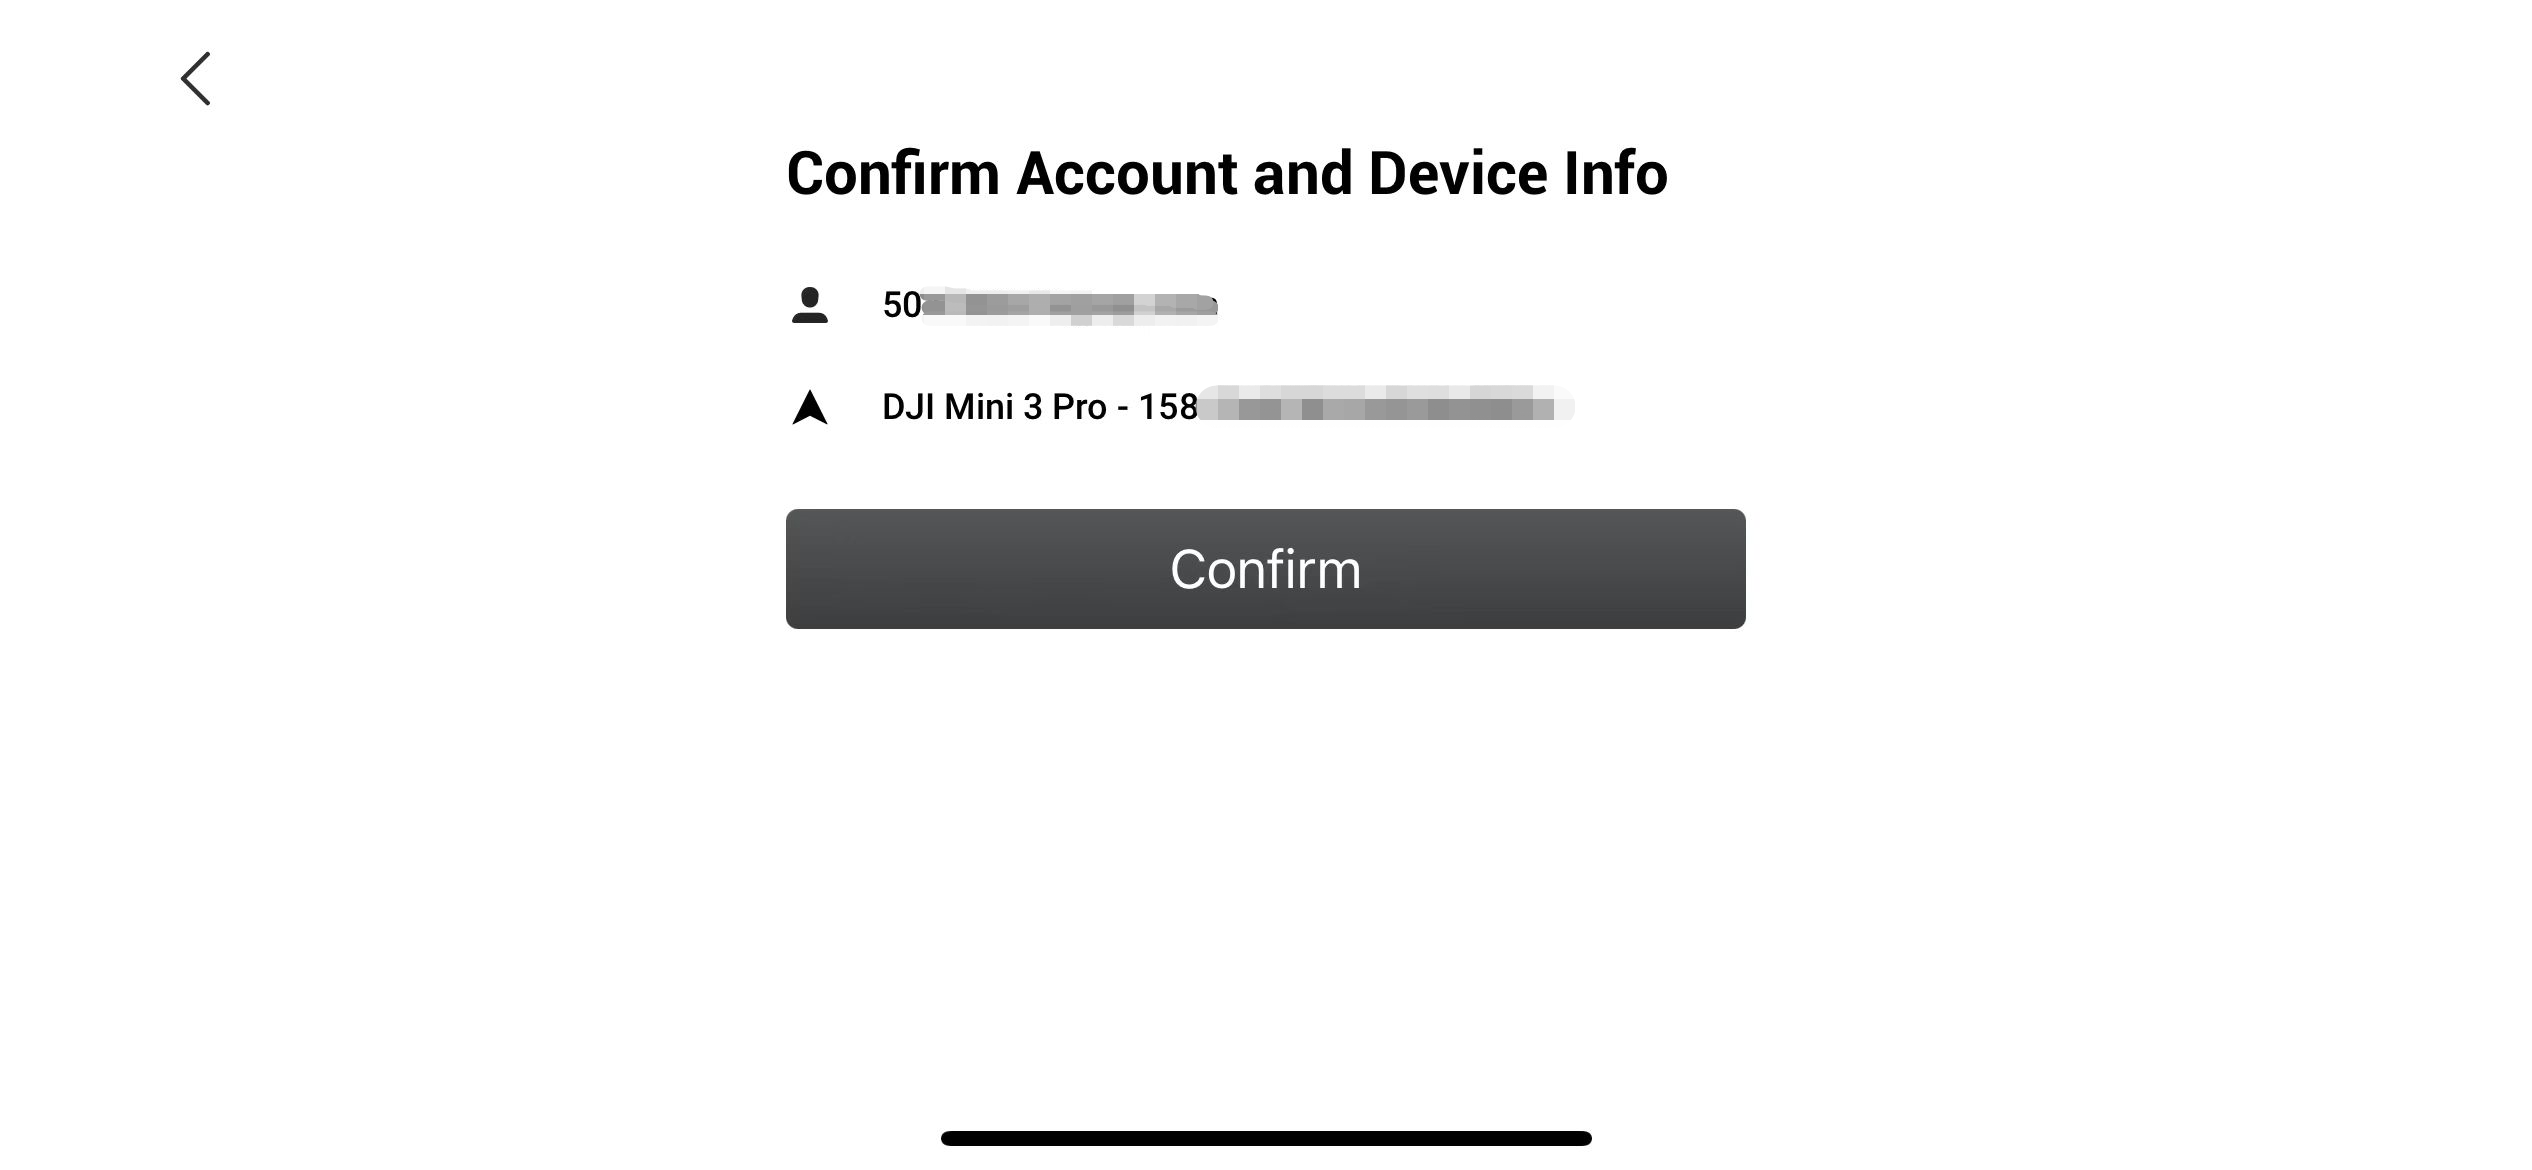 Skärmbild av bekräftelsesida för konto- och enhetsinfo. Text: "Confirm Account and Device Info", användarikon, enhetsikon "DJI Mini 3 Pro - 158", och en knapp "Confirm".